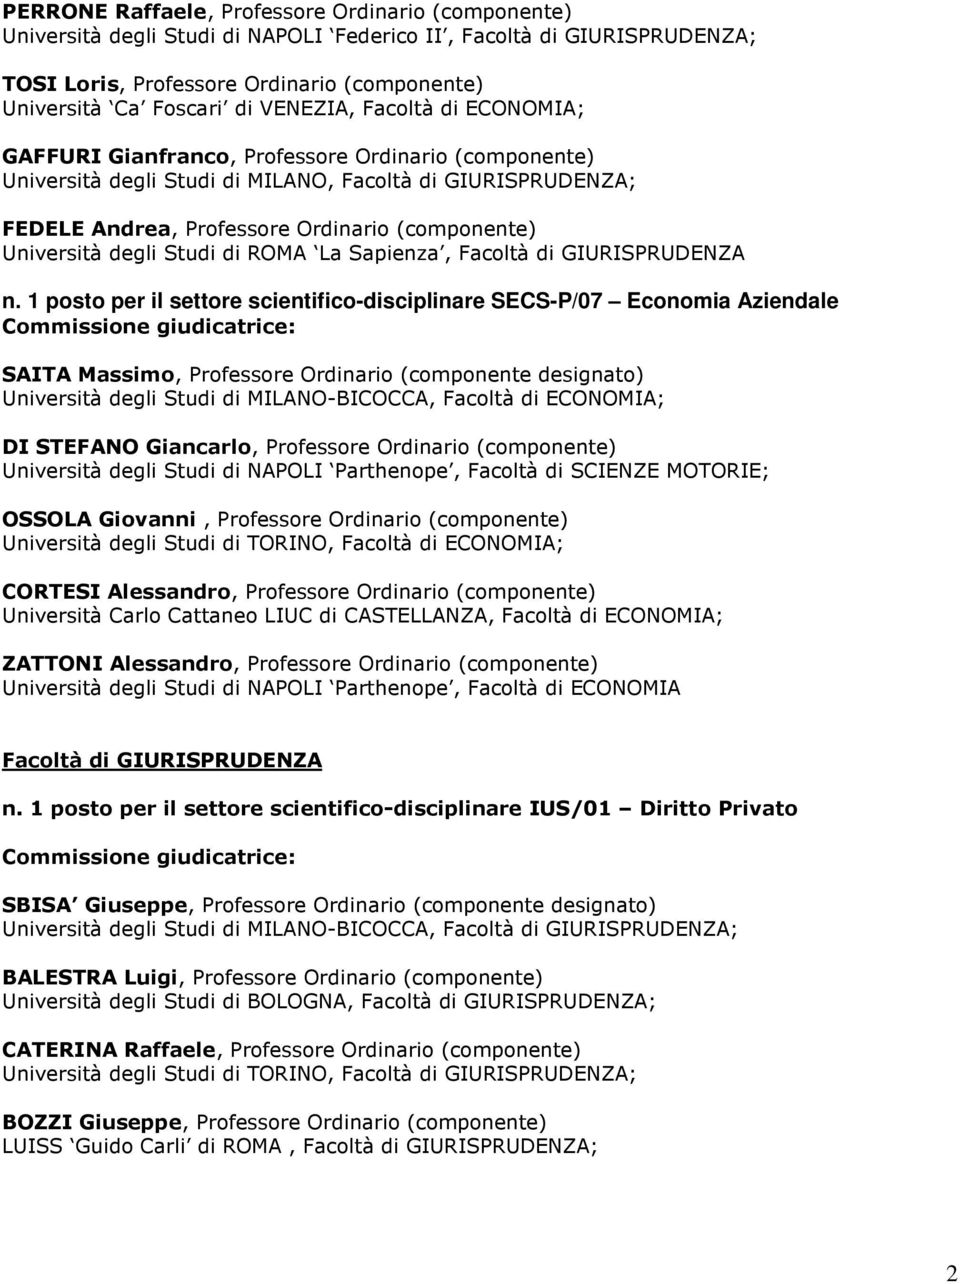 Università degli Studi di ROMA La Sapienza, Facoltà di GIURISPRUDENZA n.